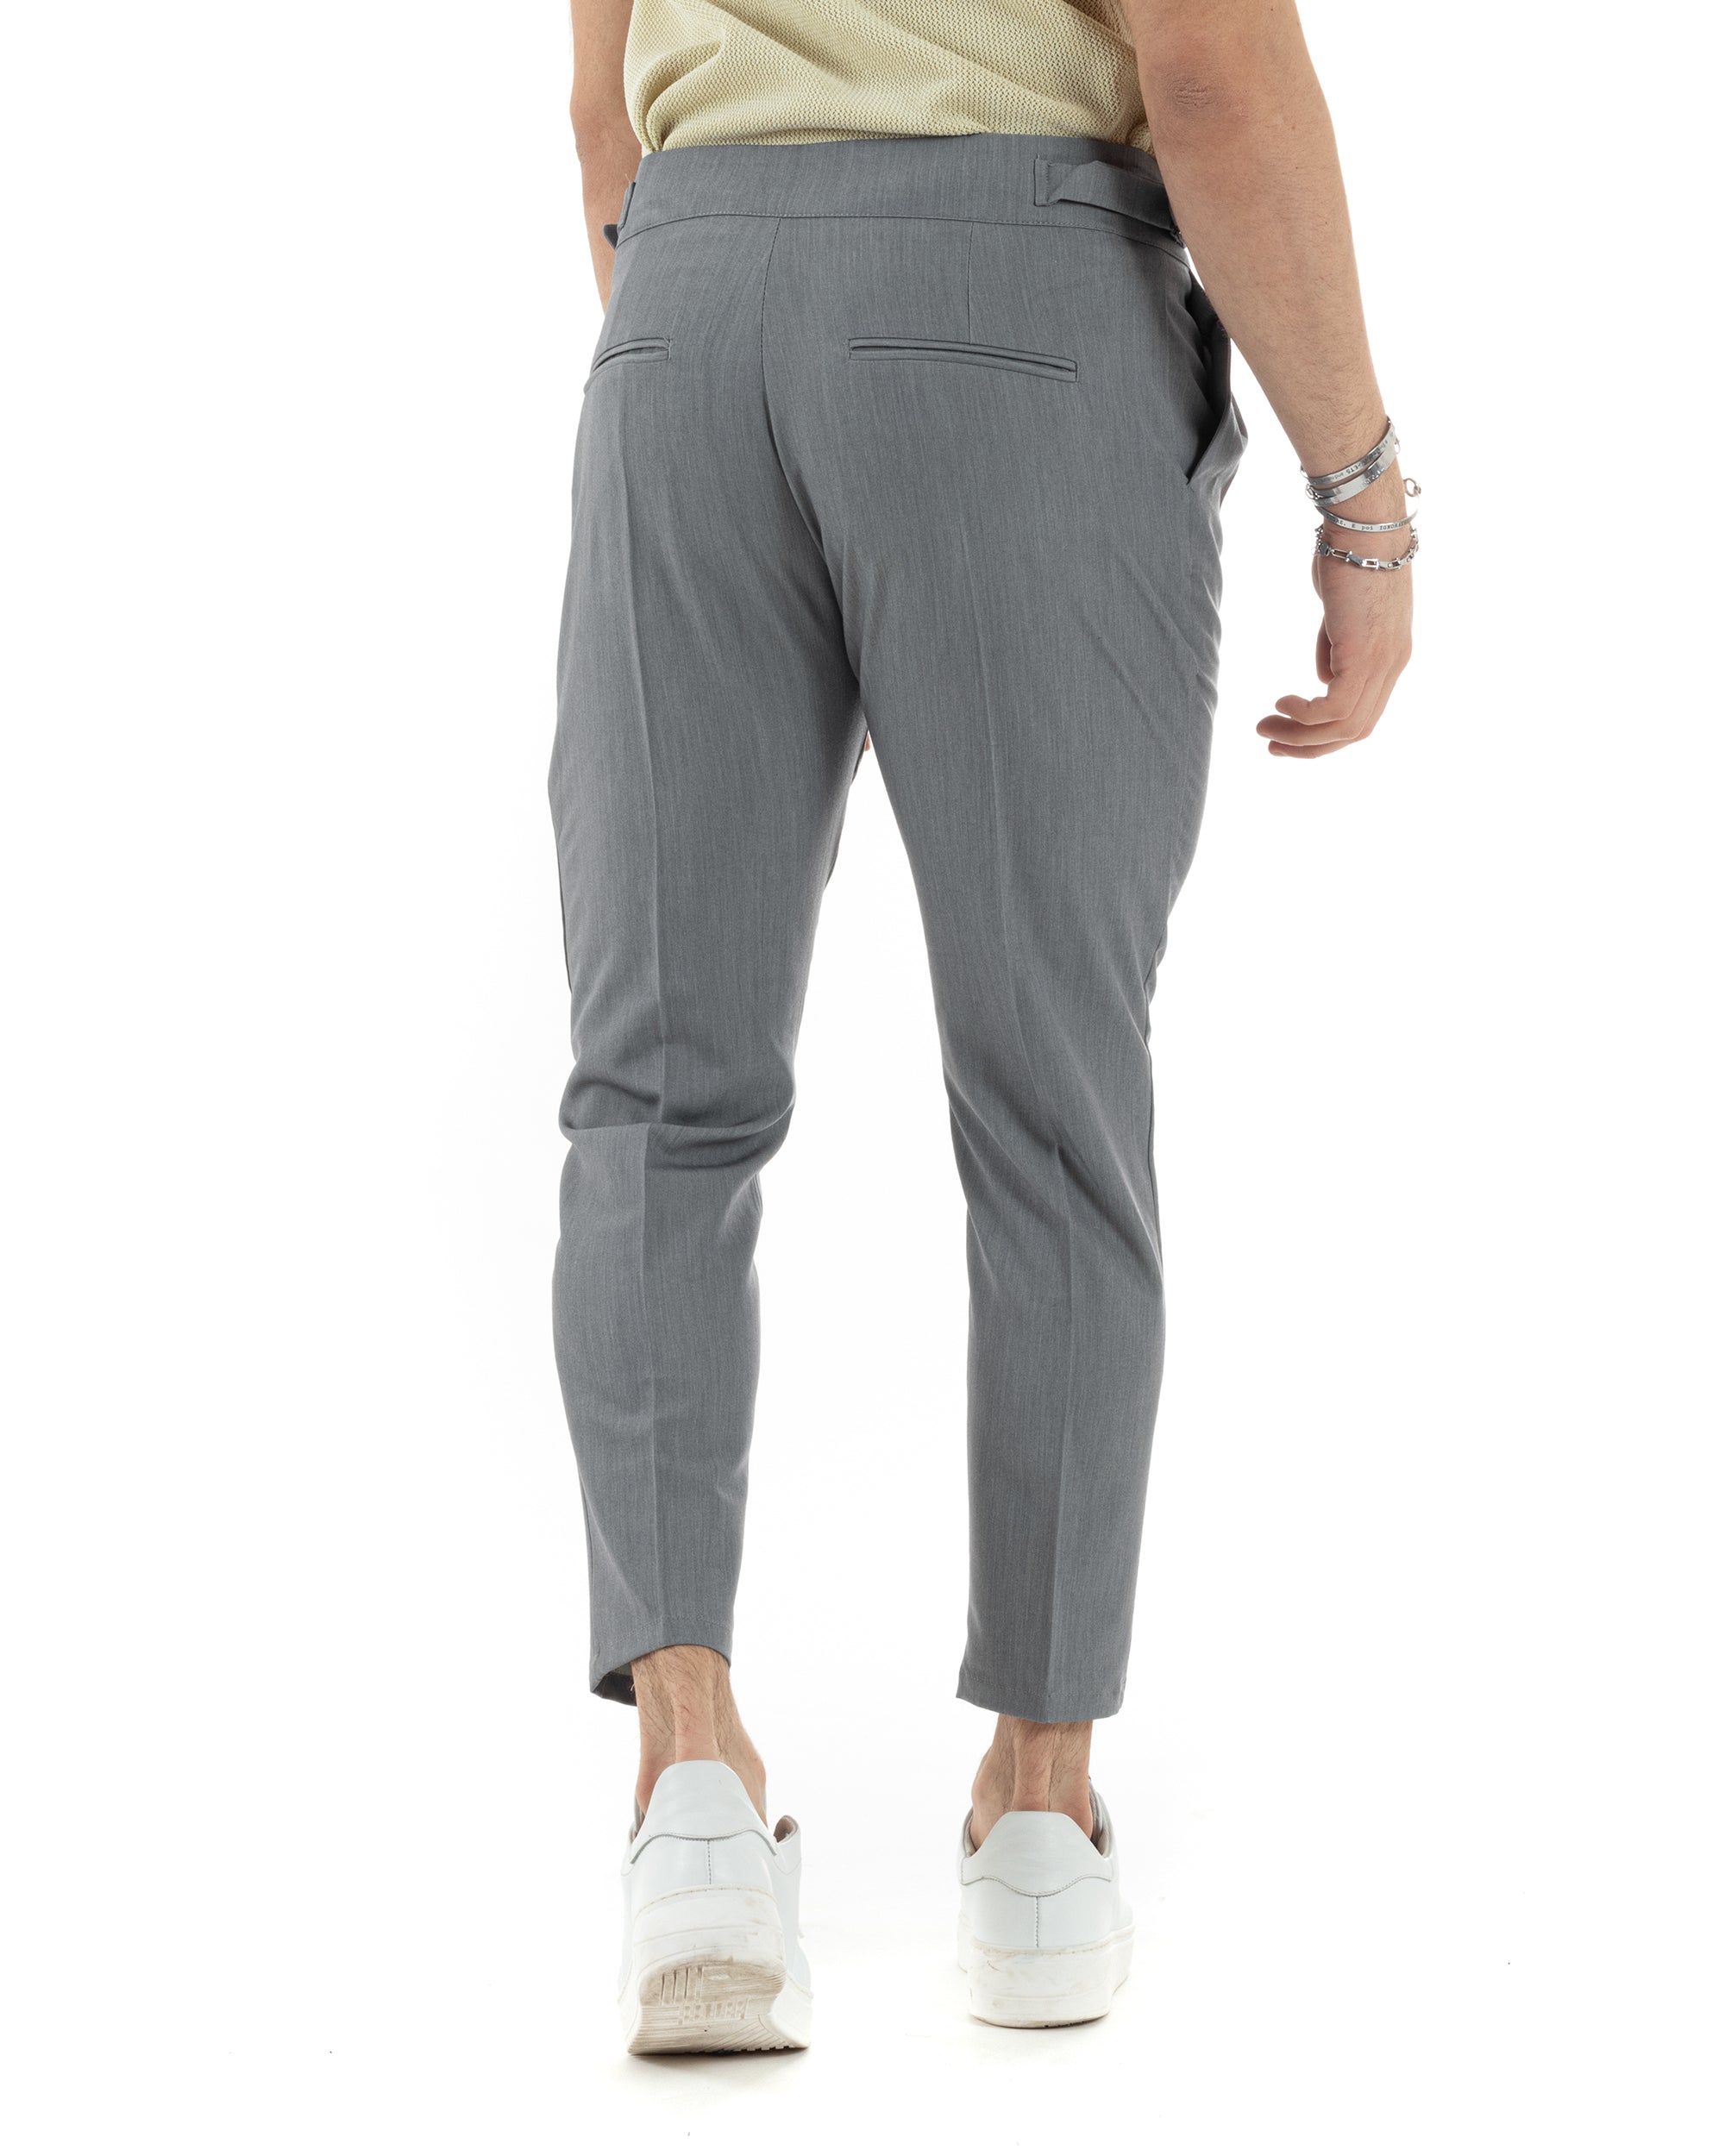 Pantaloni Uomo Tasca America Vita Alta Classico Pinces Abbottonatura Allungata Fibbia Casual Grigio GIOSAL-P6043A